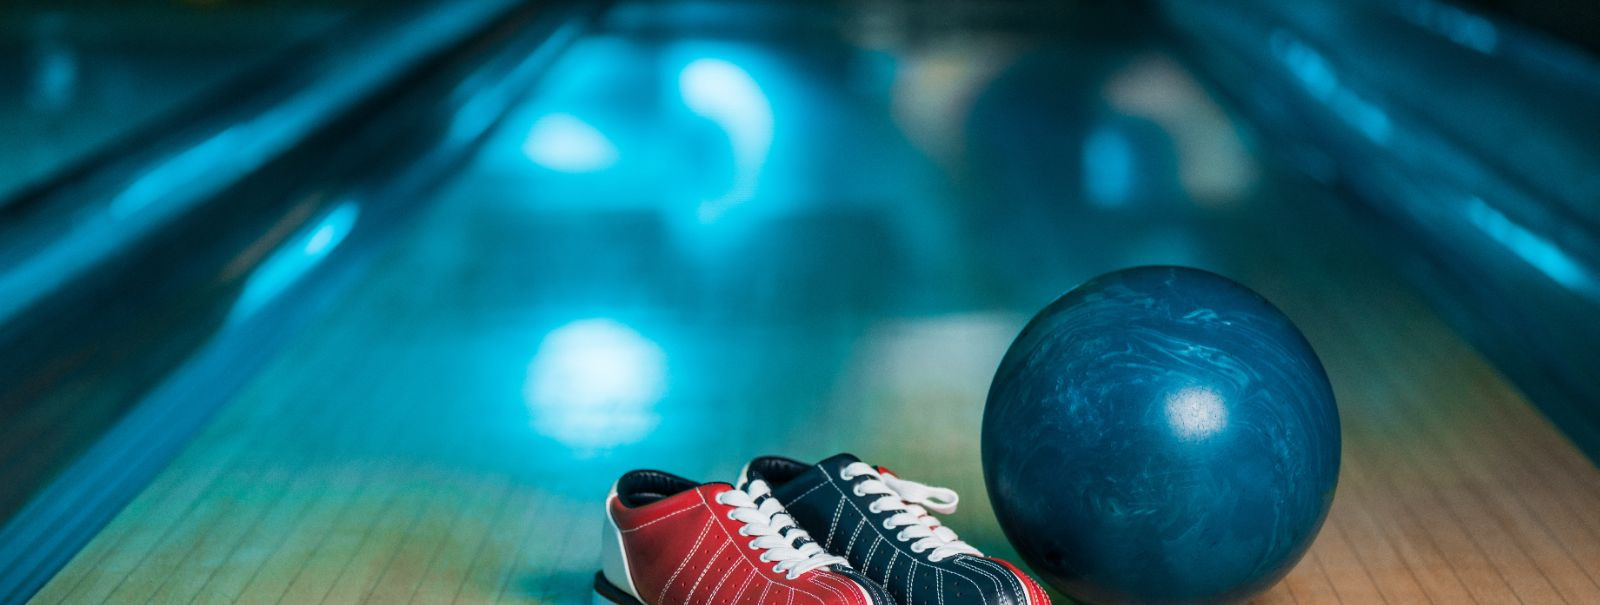 Õige bowlingukuuli valimine on kriitiline otsus, mis võib oluliselt mõjutada teie mängu. Olgu te siis kogenud proff või juhuslik harrastaja, õige kuul võib para